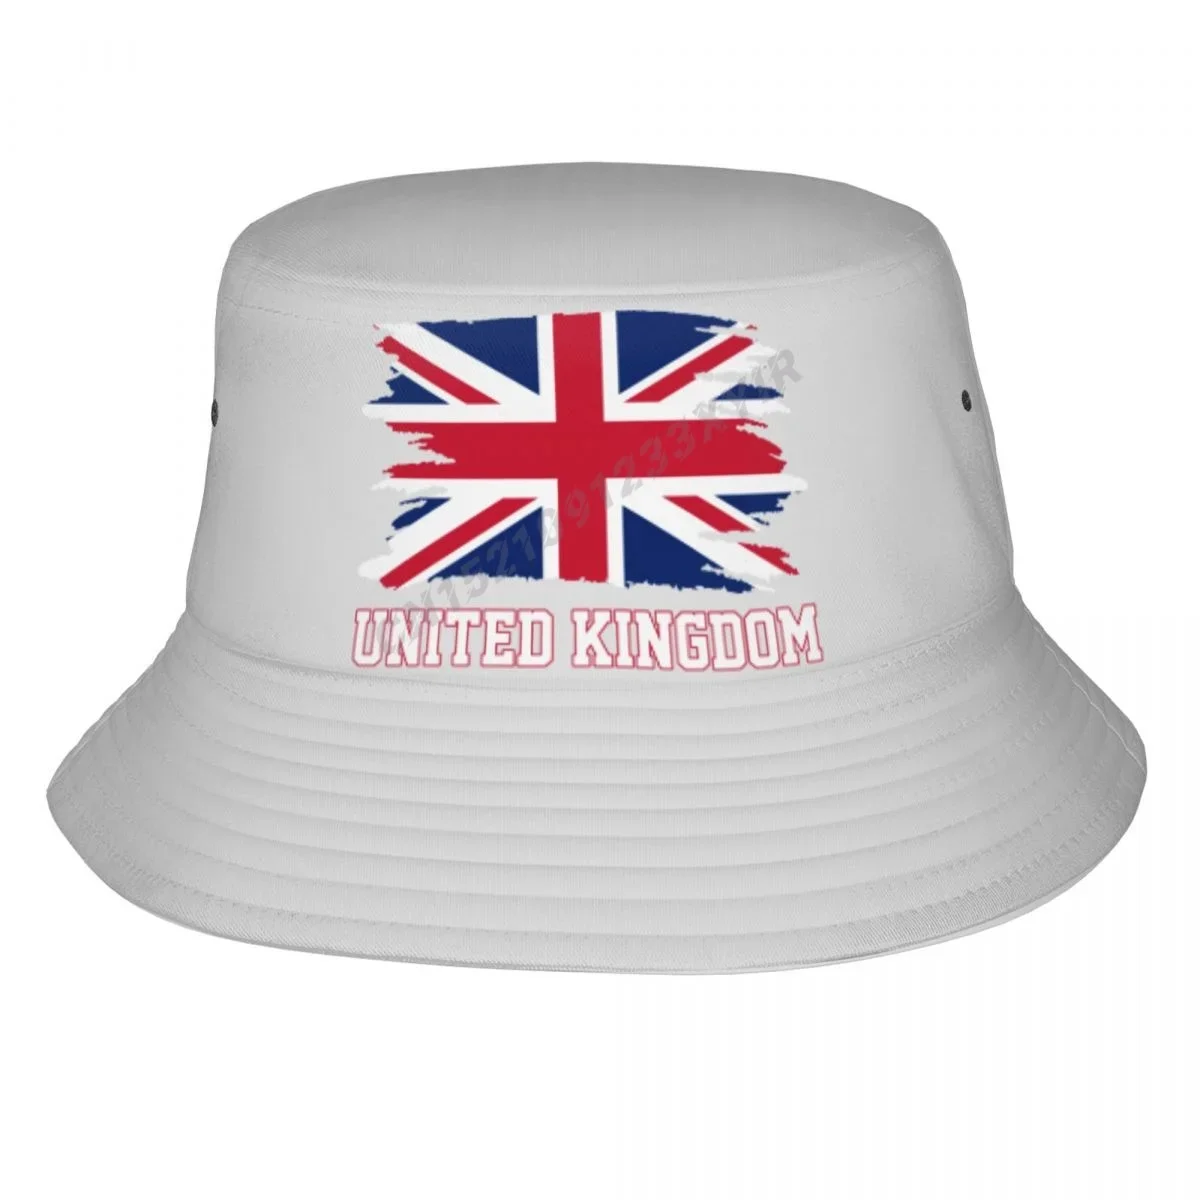 

Панама с флагом Великобритании, крутая британская шляпа от солнца для фанатов Великобритании, классная летняя детская шляпа для рыбалки